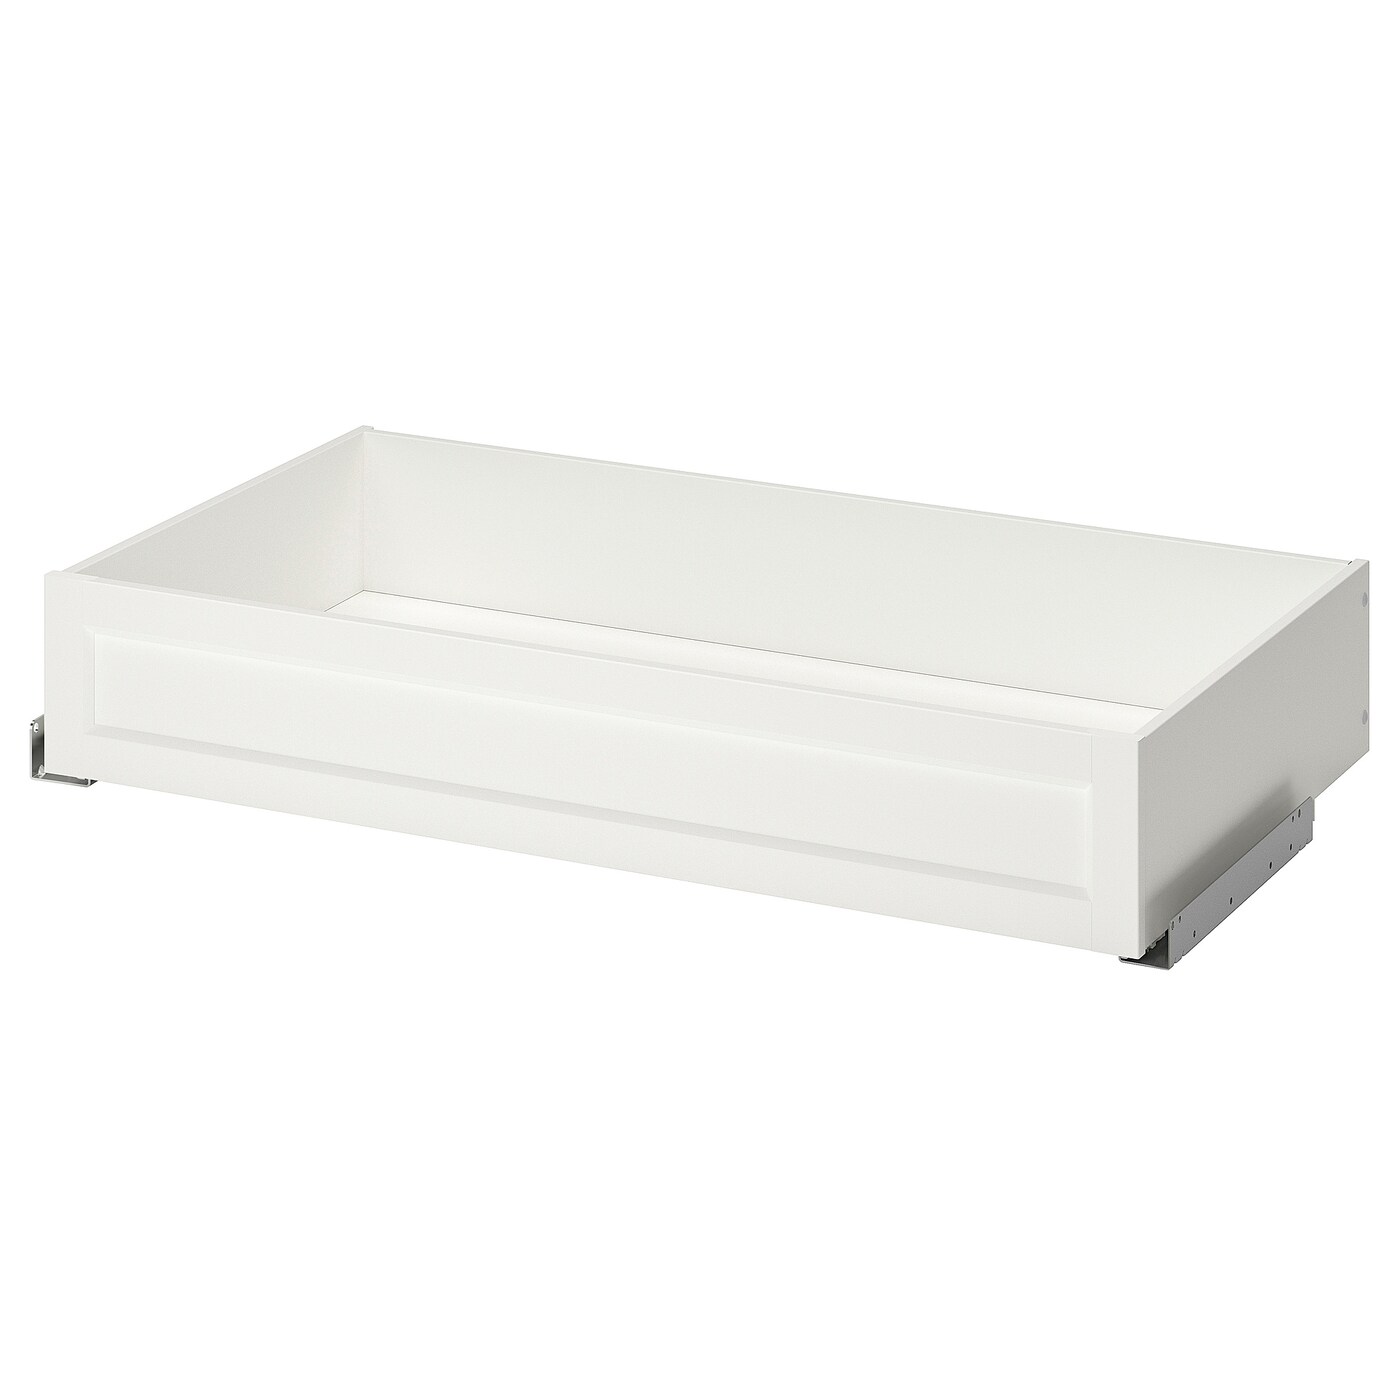 Ящик с фронтальной панелью - IKEA KOMPLEMENT, 100x58 см, белый КОМПЛИМЕНТ ИКЕА